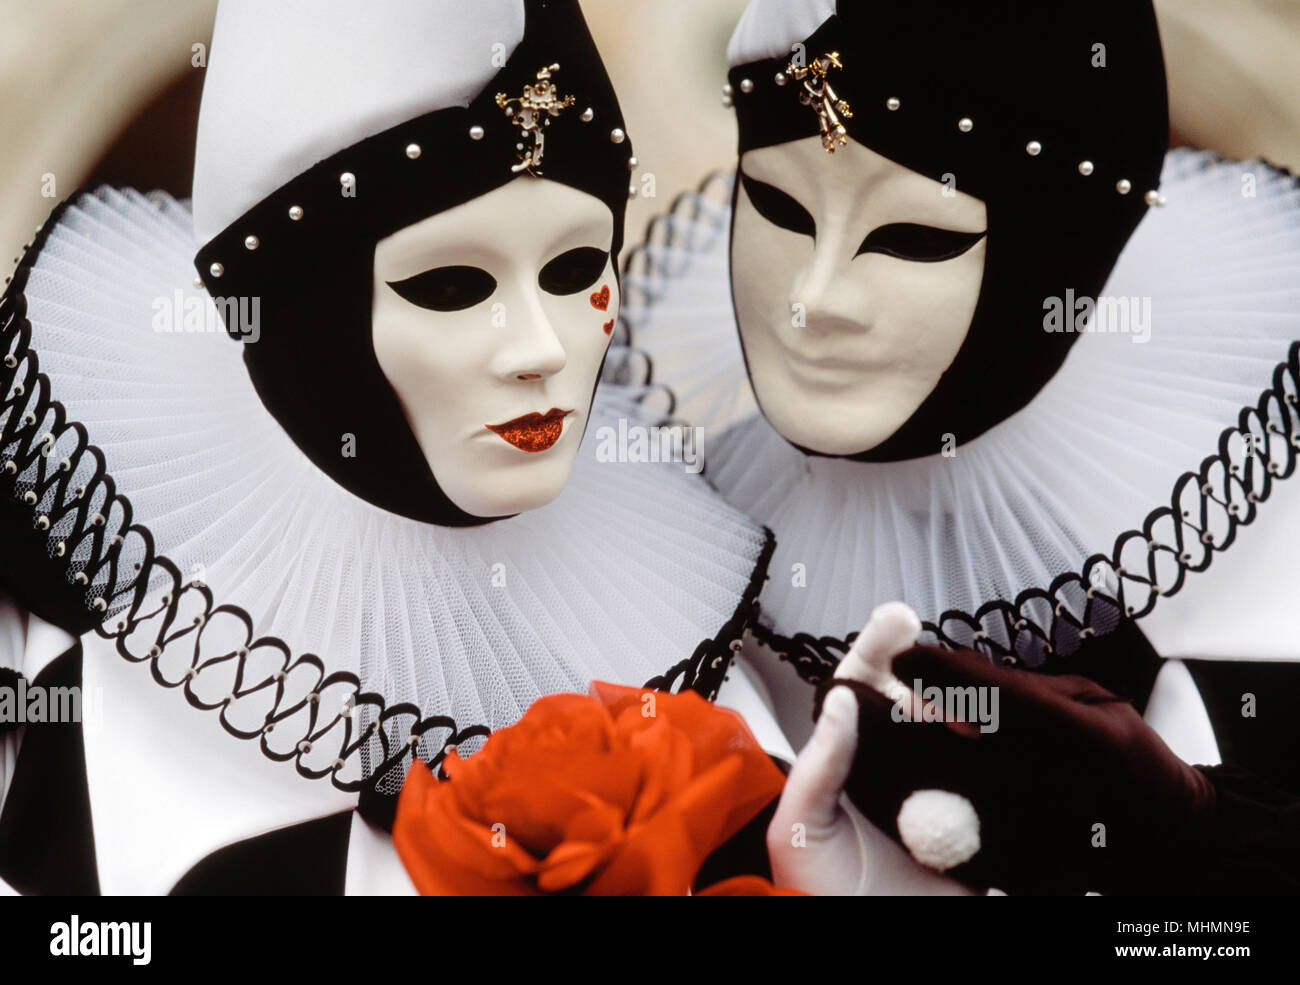 Venise, Italie ; couple dans Pierrot costumes à Carnaval de Venise. Pierrot est un personnage de la pantomime stock et la Commedia dell'Arte. Tenue en février de chaque Banque D'Images